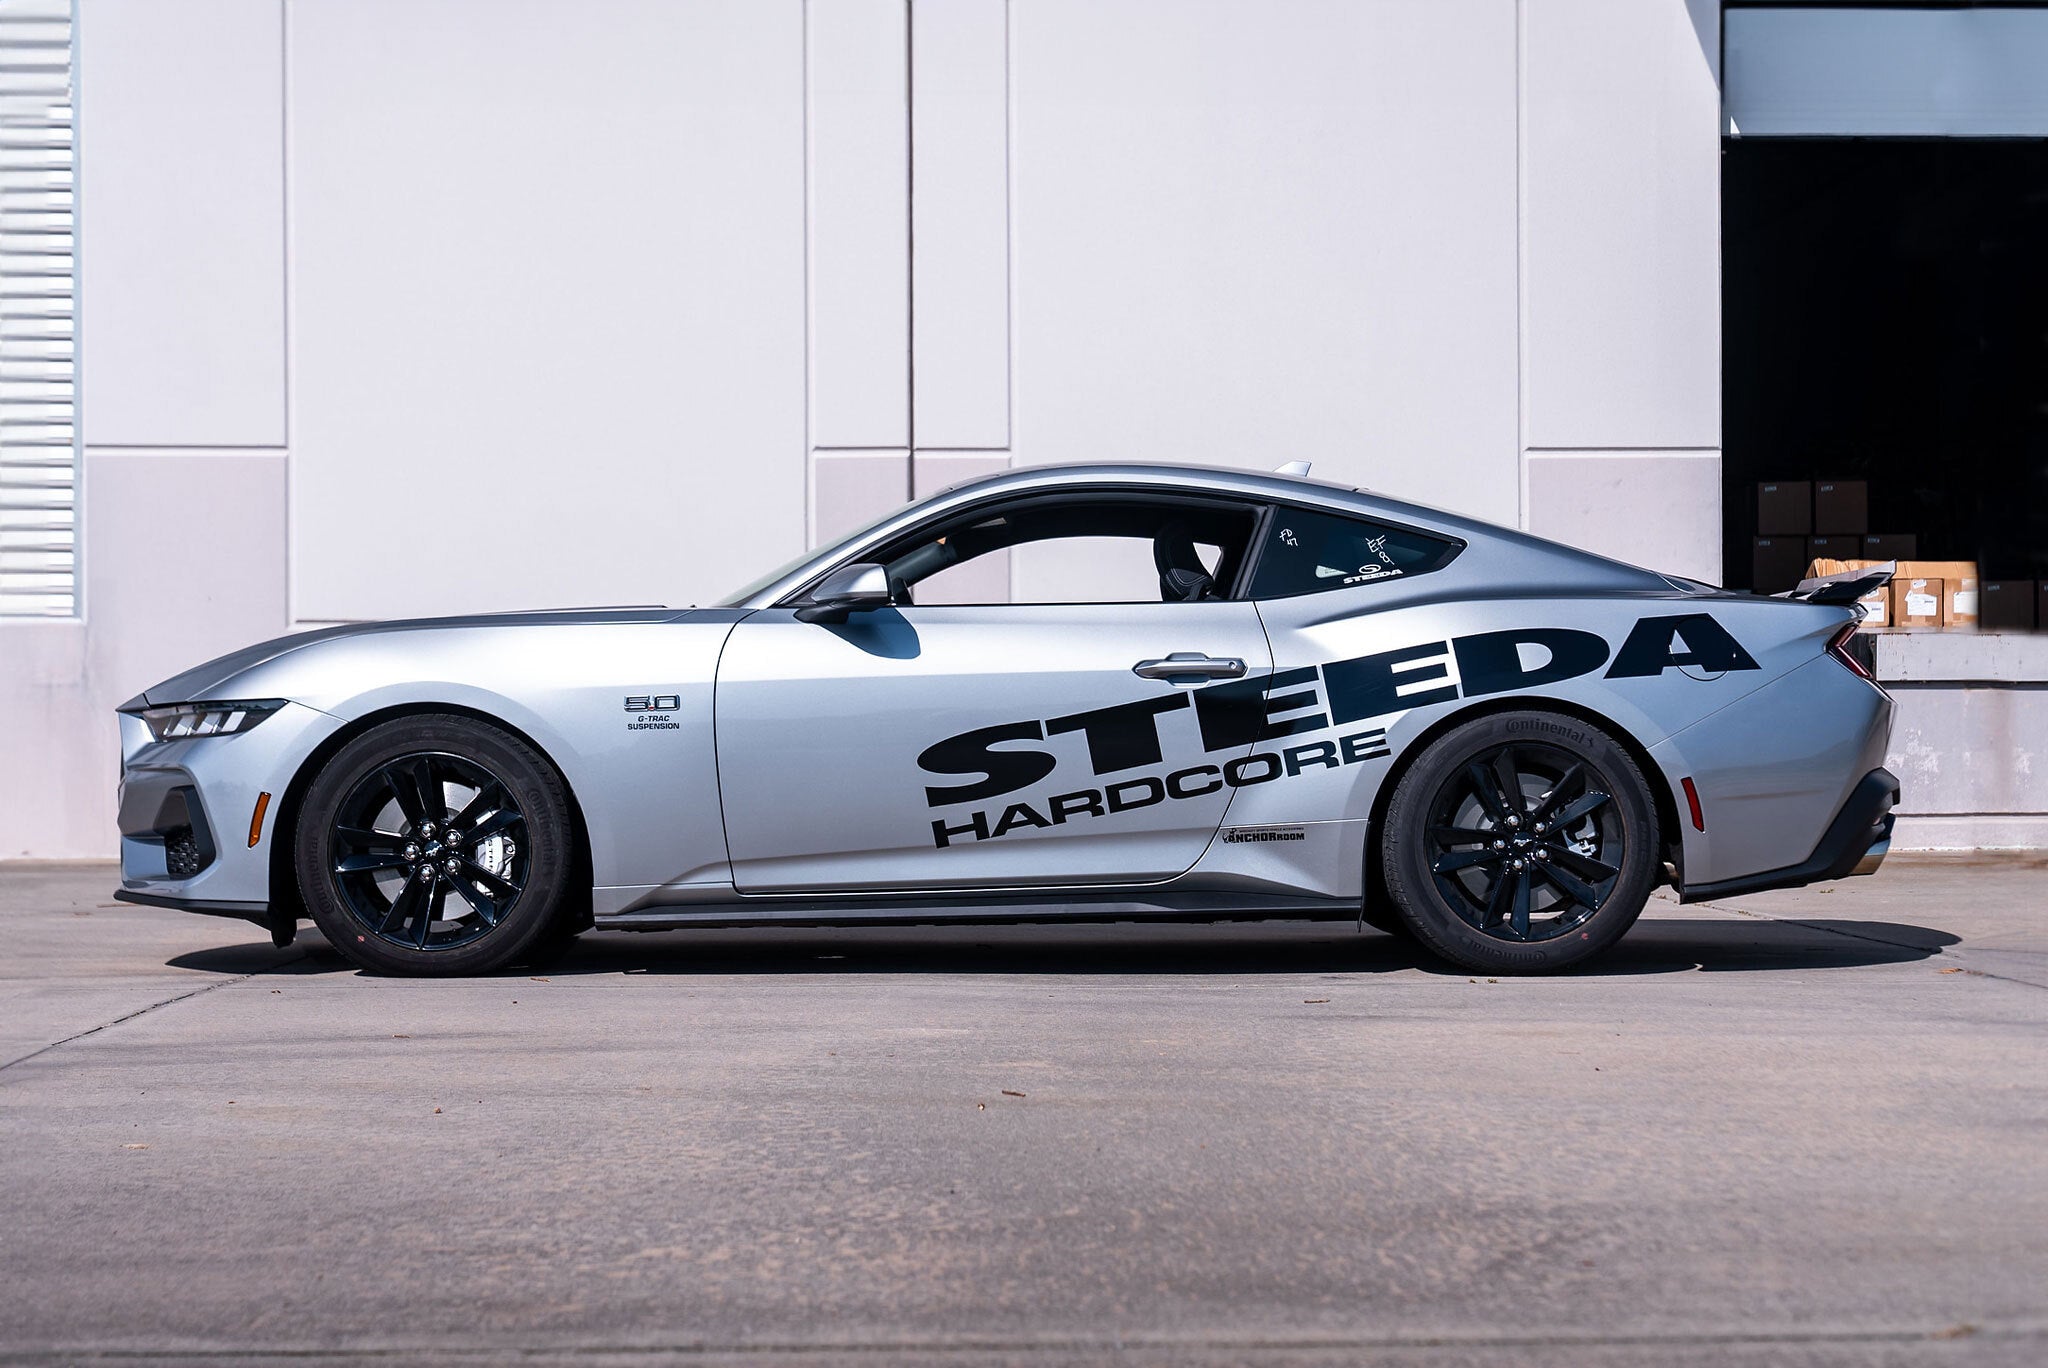 Η Steeda ξεκινά την ανάπτυξη της Mustang νέας γενιάς S650 με Silver Bullet V 2.0!